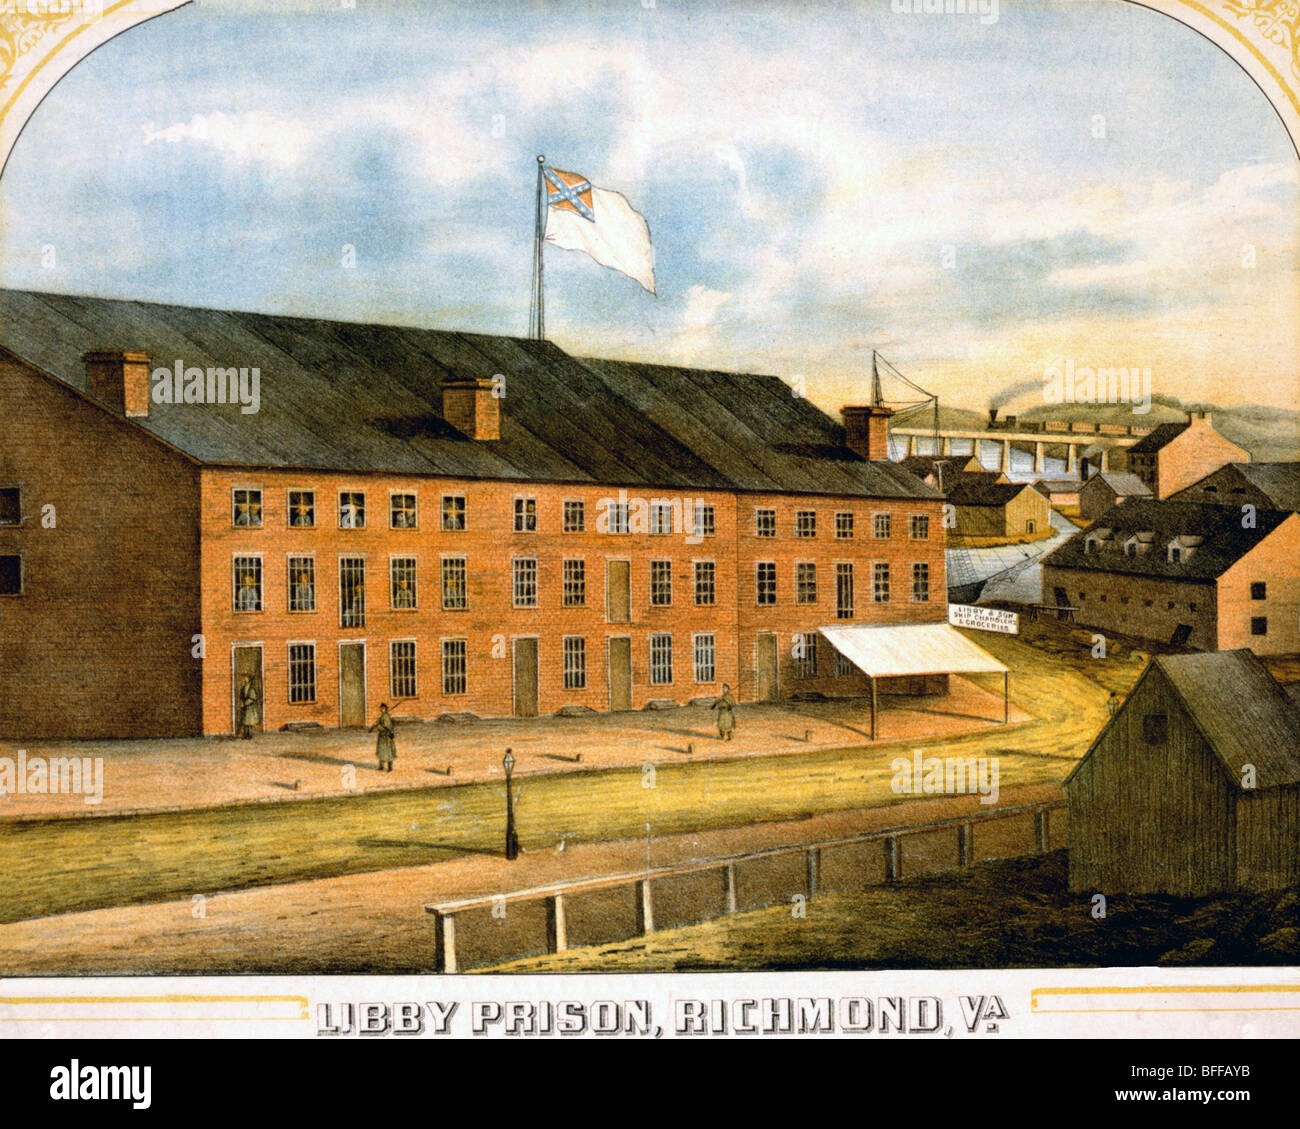 Exterior view of Libby Prison, infamous Civil War POW Prison, Richmond, Virginia 1865 Stock Photo